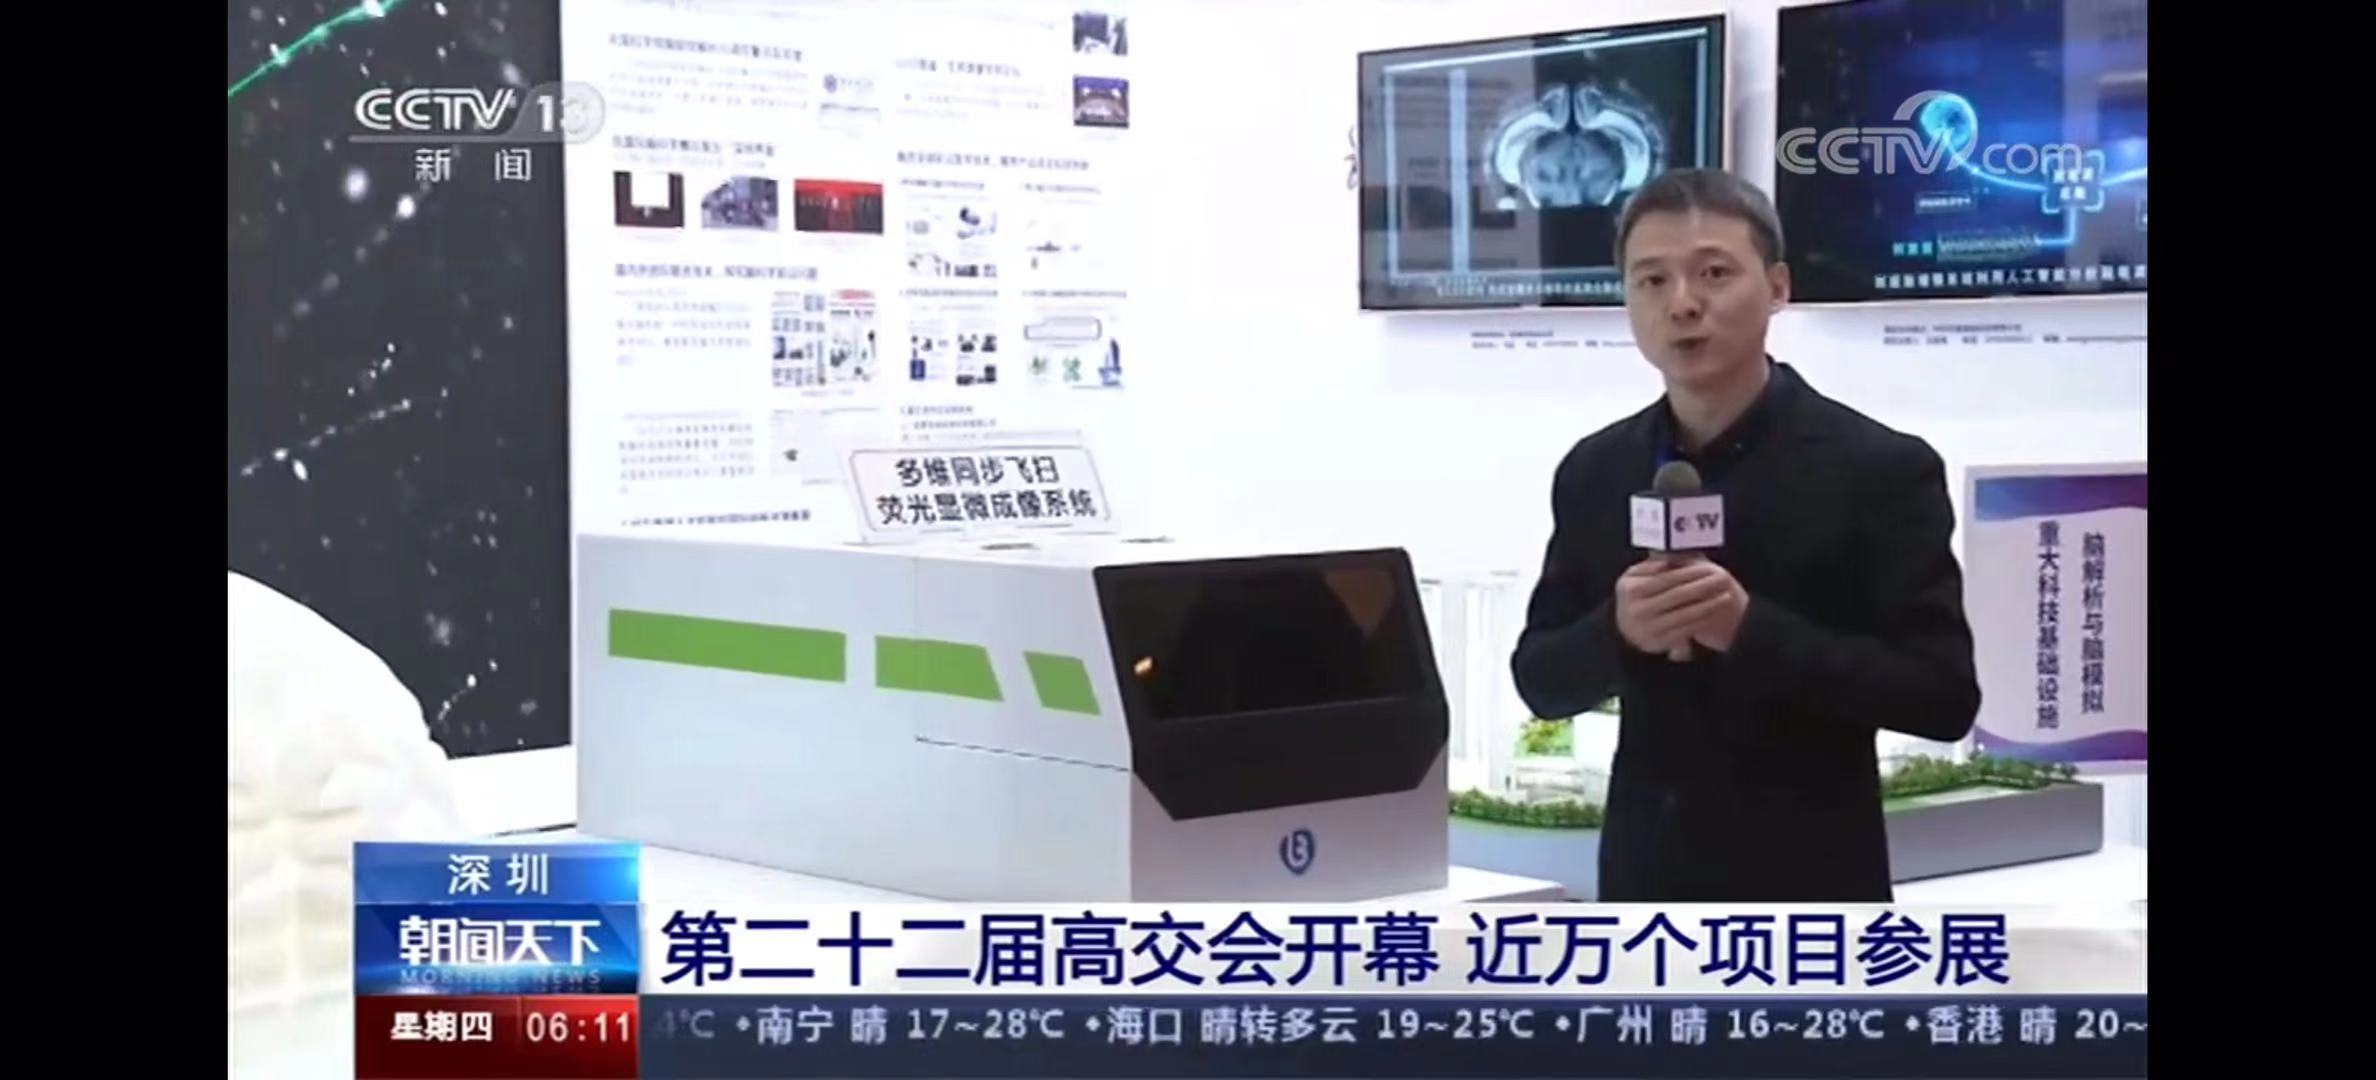 公司产品亮相第二十二届中国国际高新技术交易会